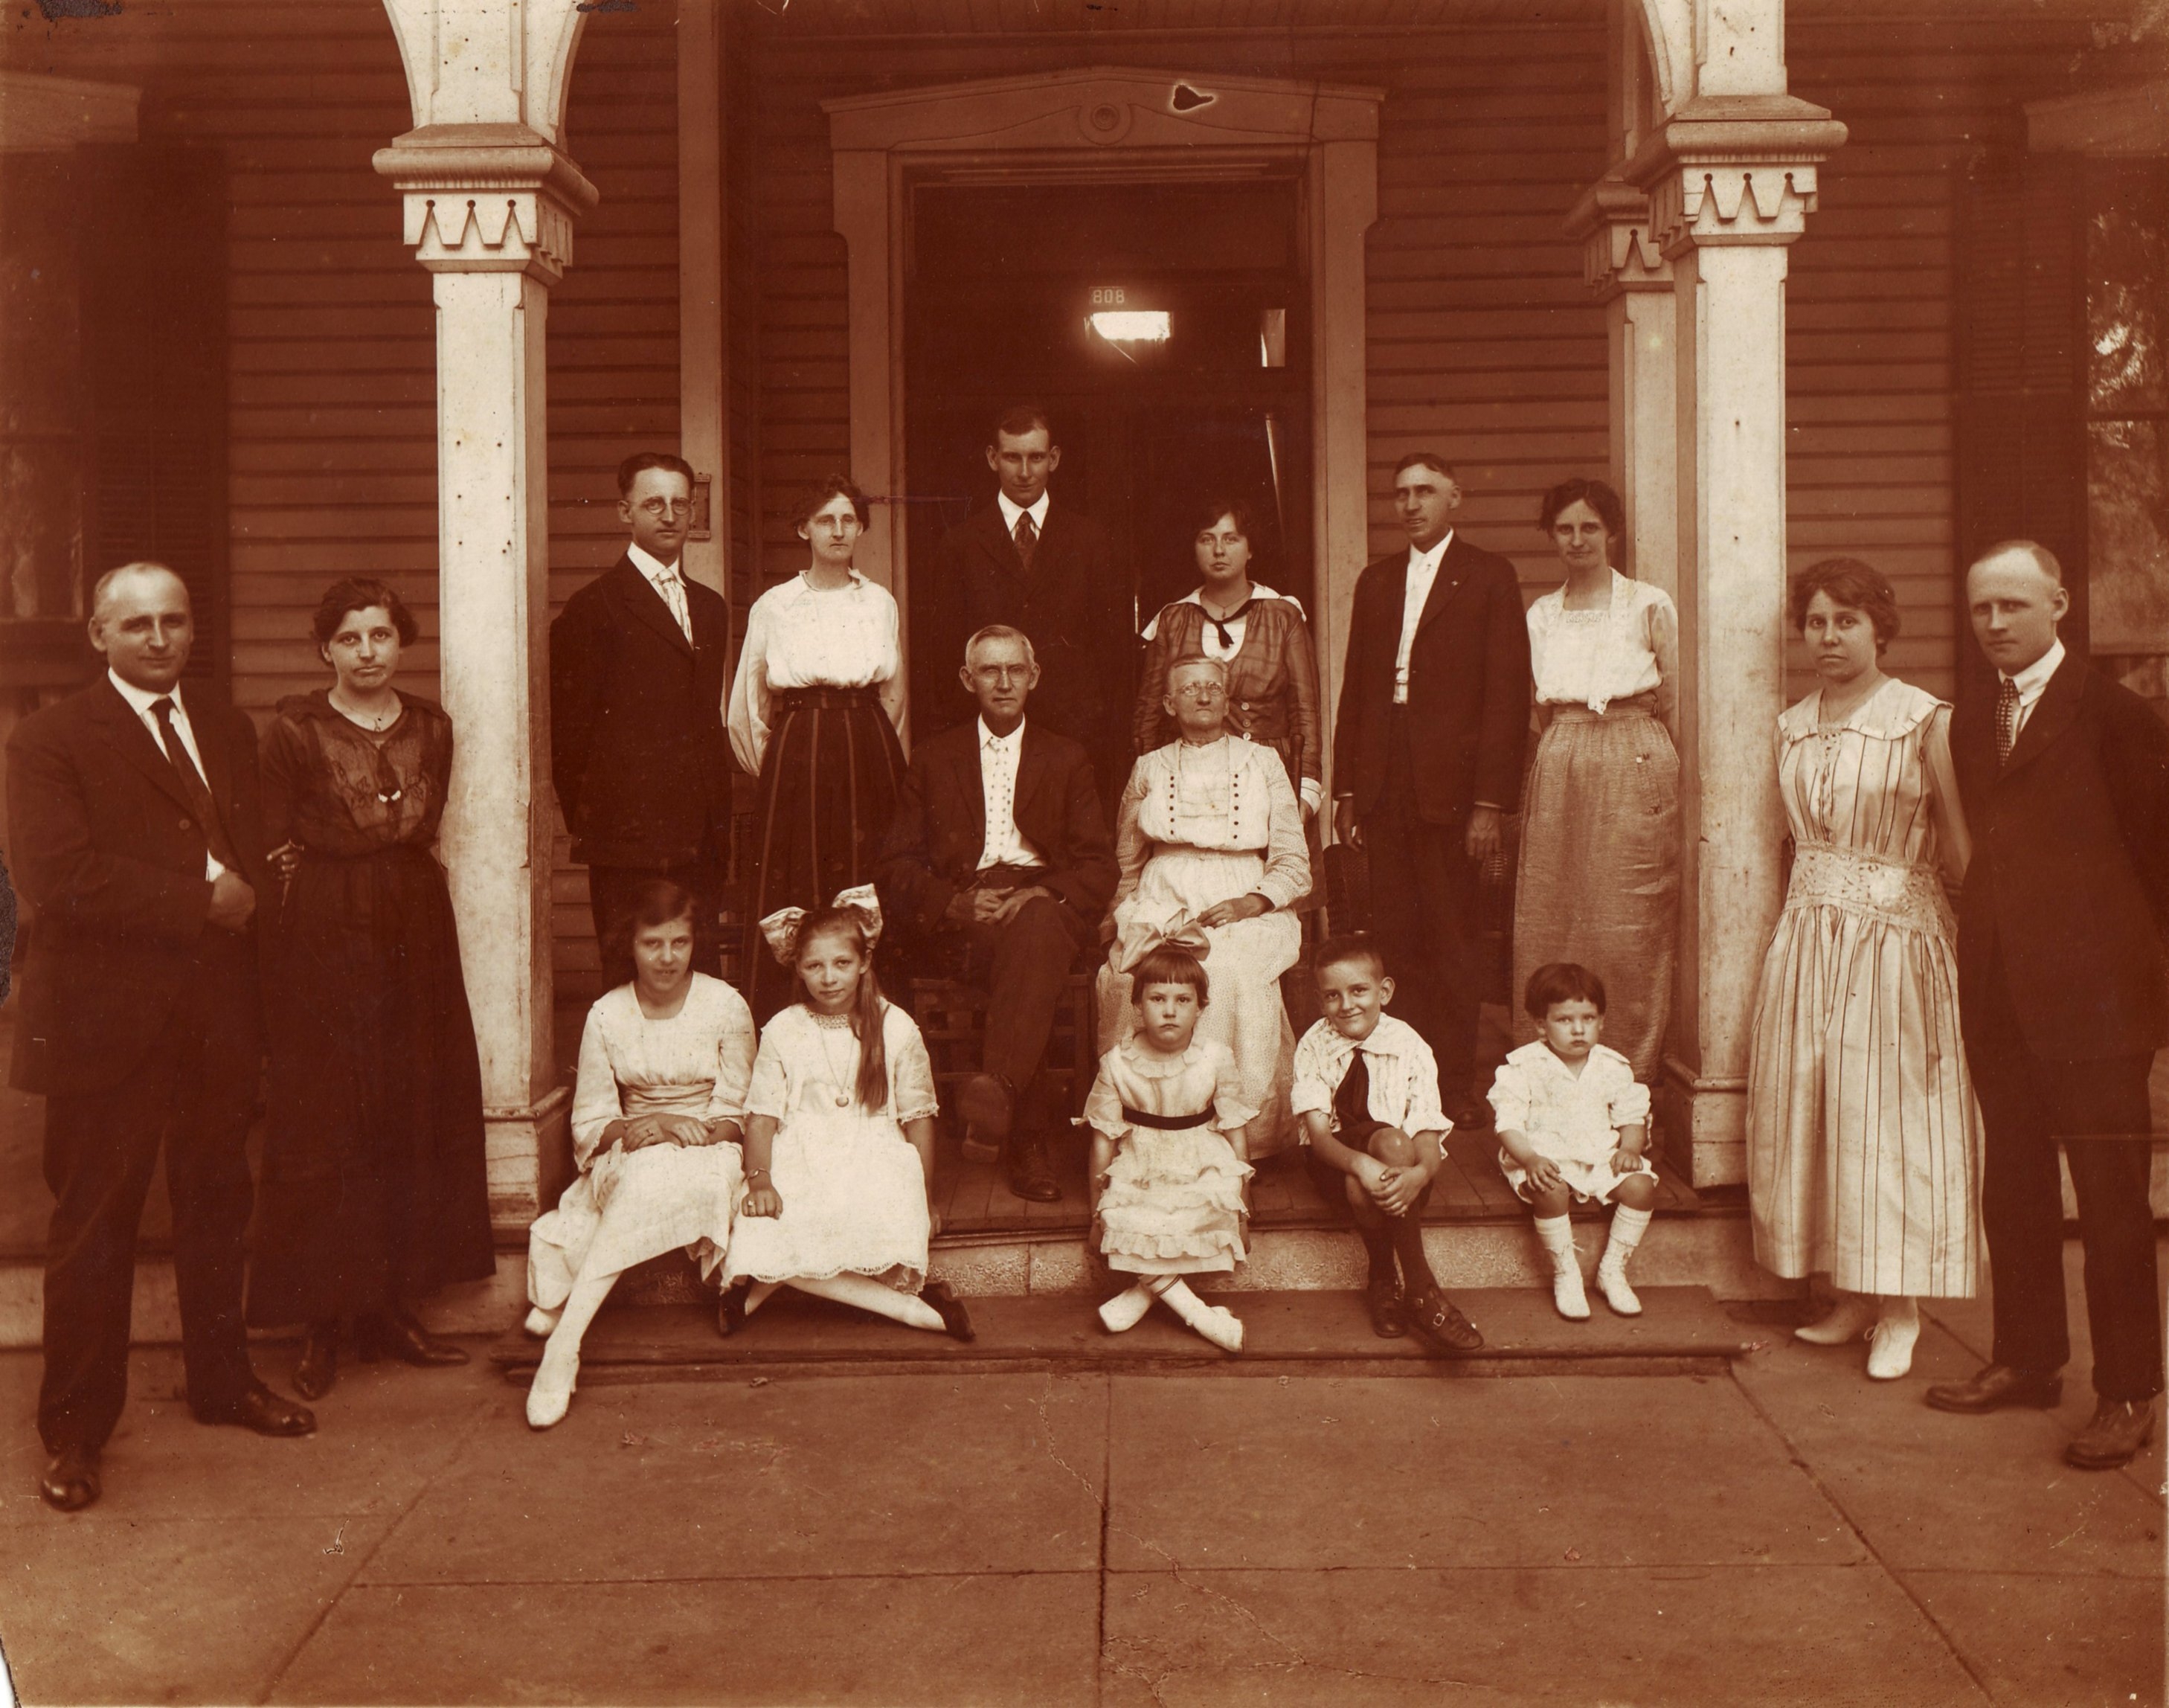 William J. Biggers Family circa 1919